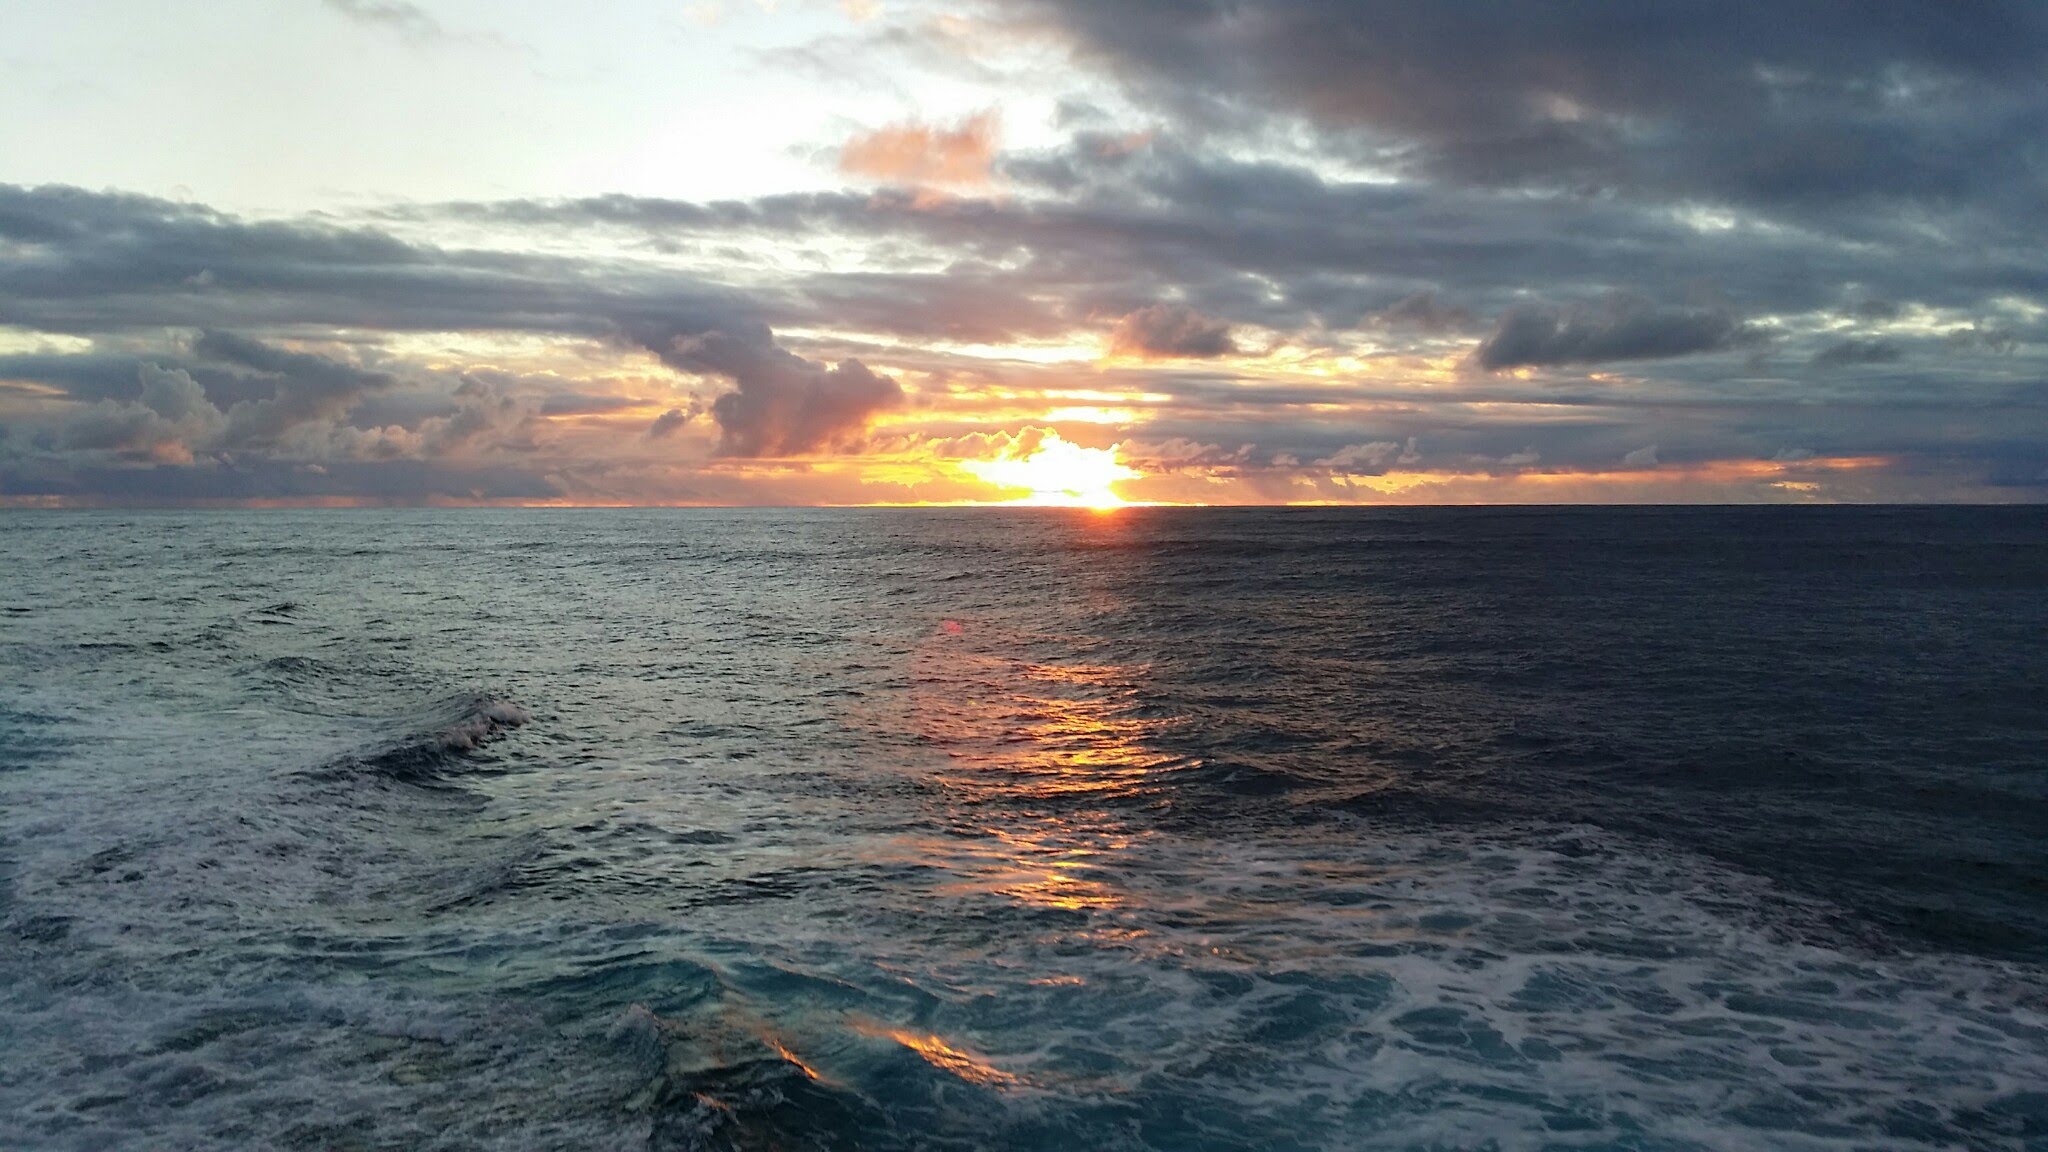 Koμμάτι 100 μέτρων «εξαφανίστηκε» από τον Ατλαντικό Ωκεανό (φωτό)